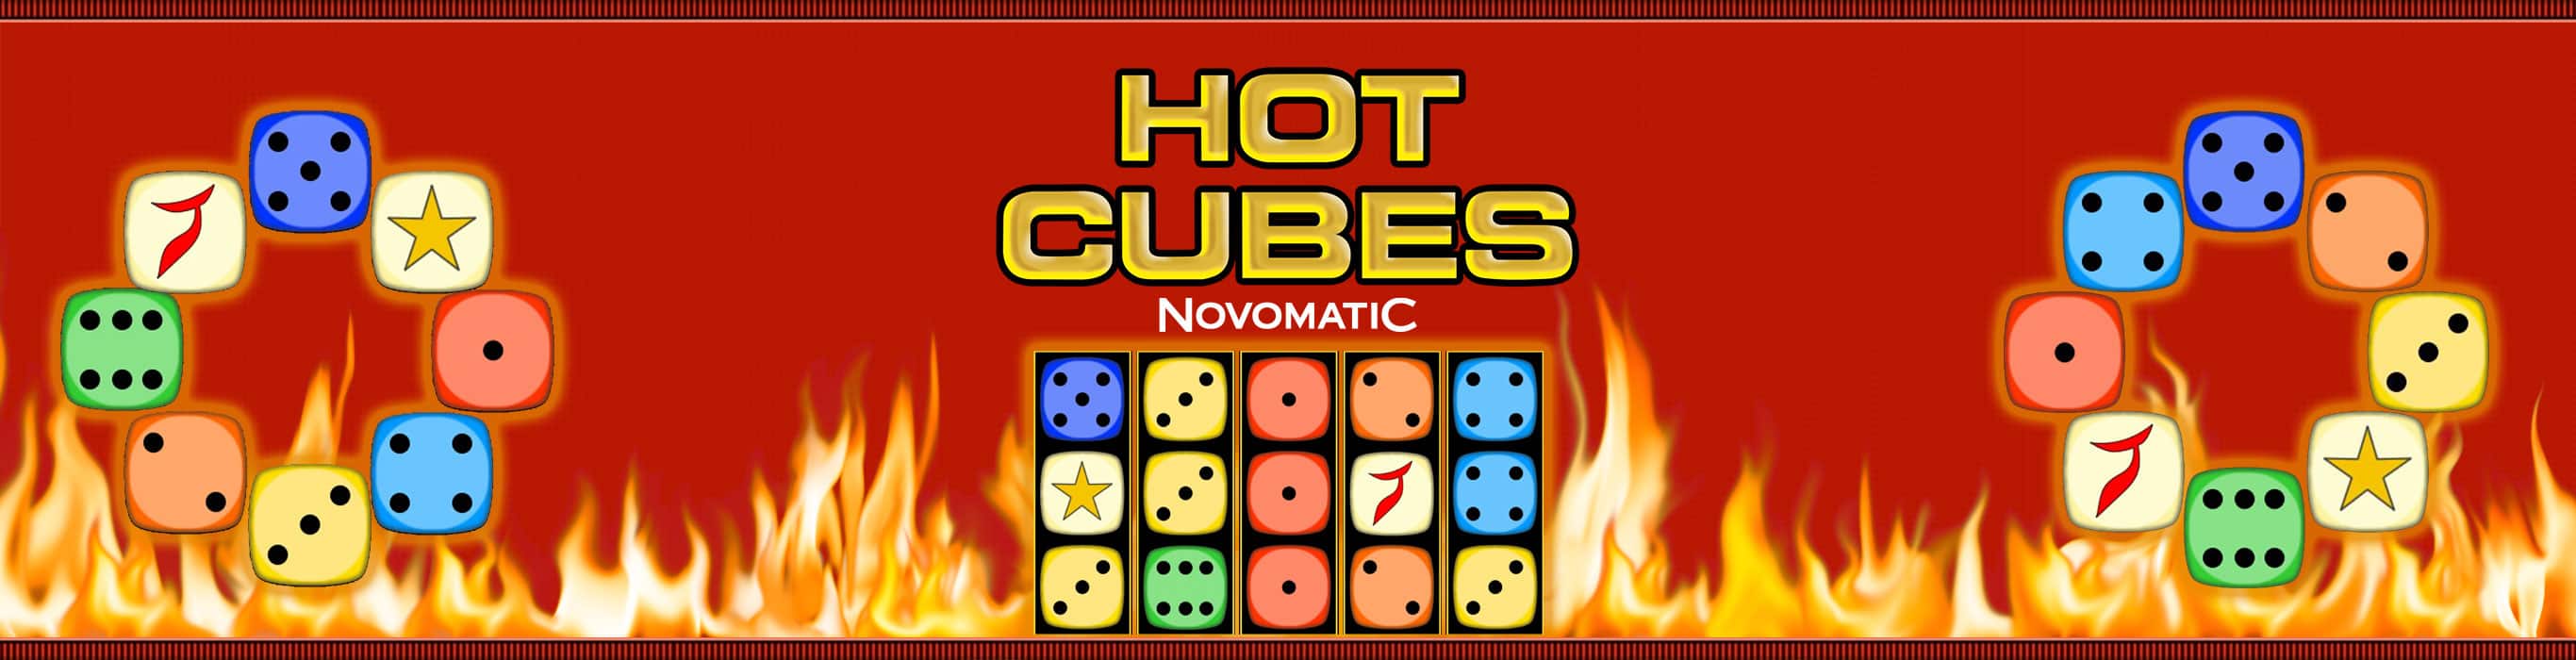 hotcubes-36win-banner-2732x700